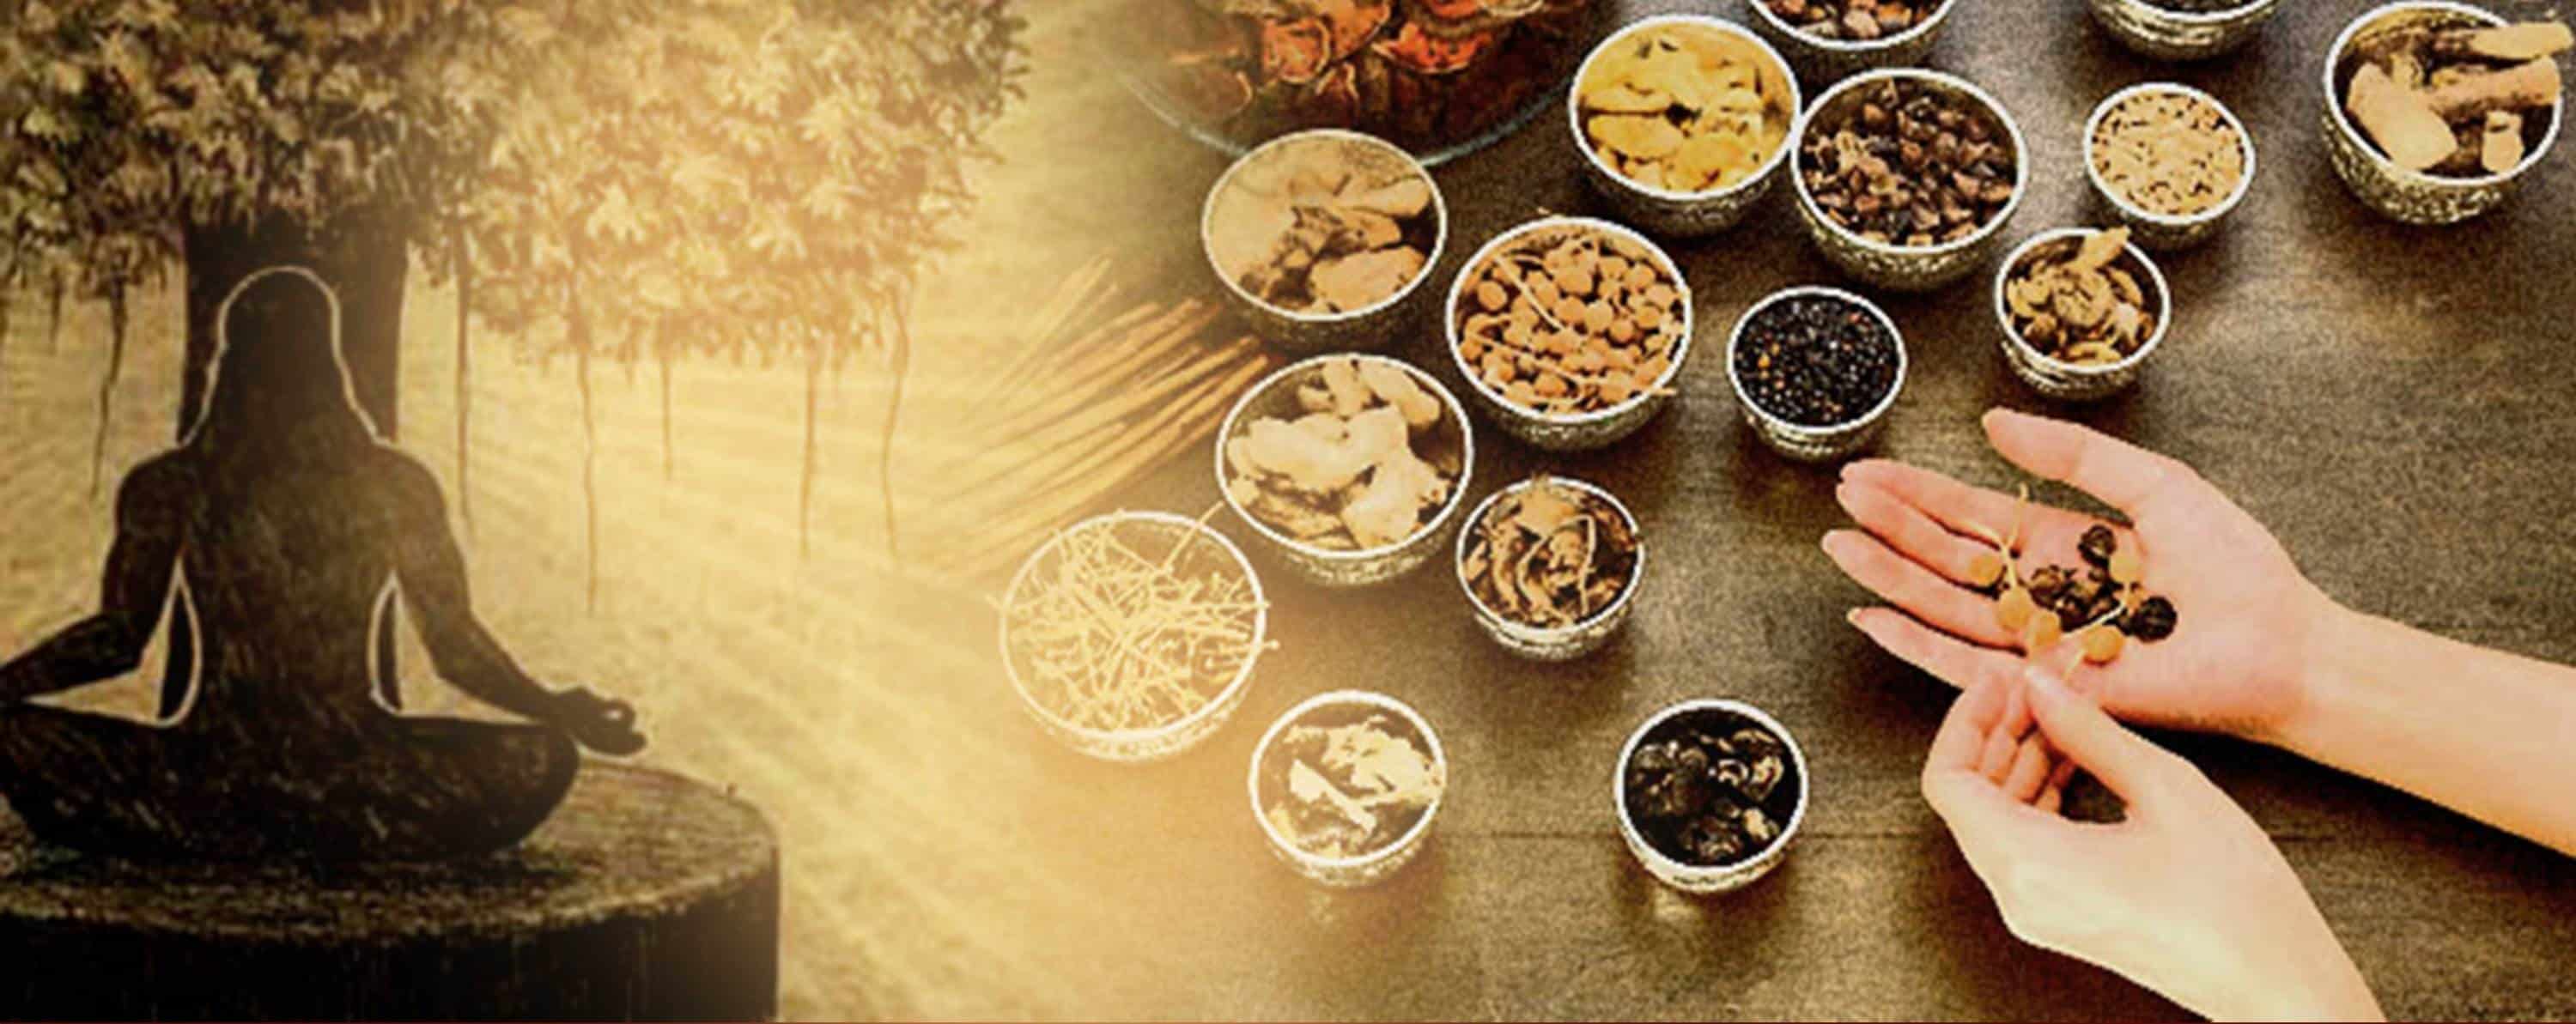 Ayurveda-Produkte für eine gesunde Verdauung und Darmbalance